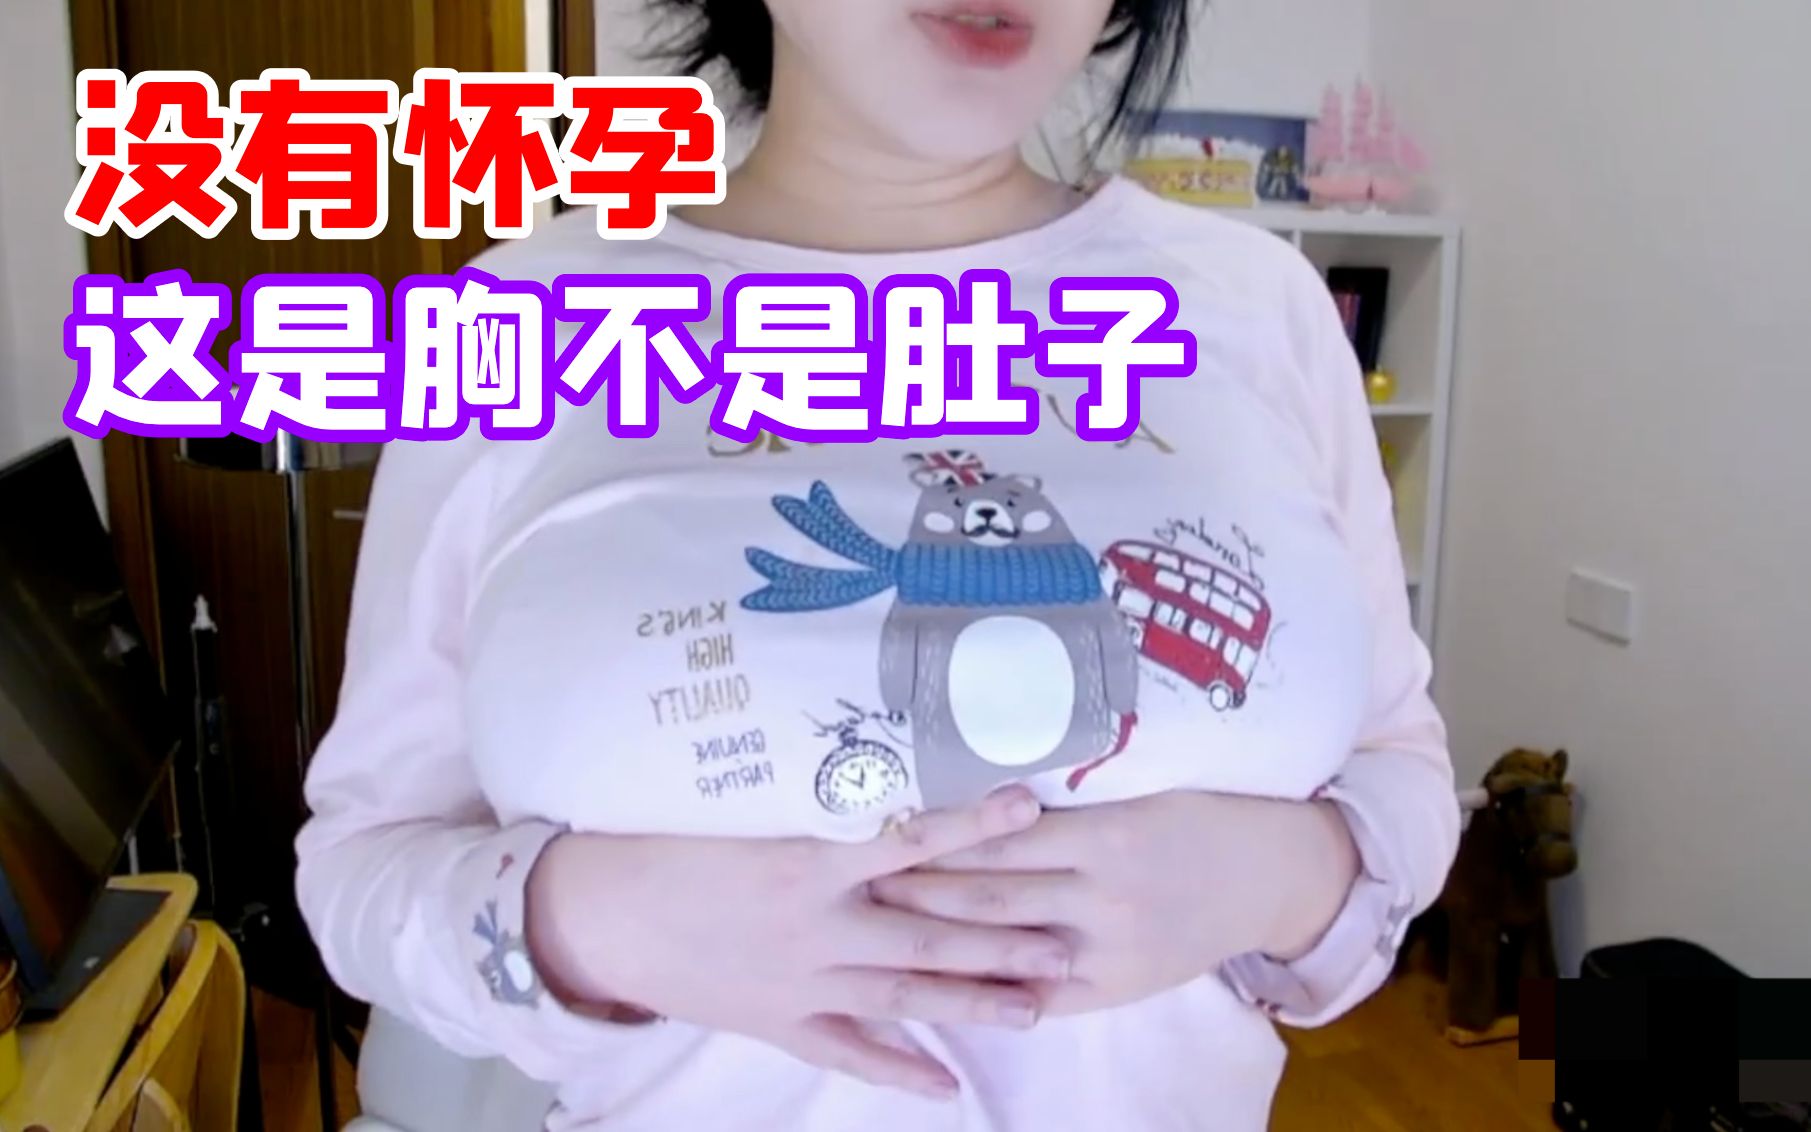 刘飞儿:我没怀孕啊,这是胸不是肚子啊啊啊